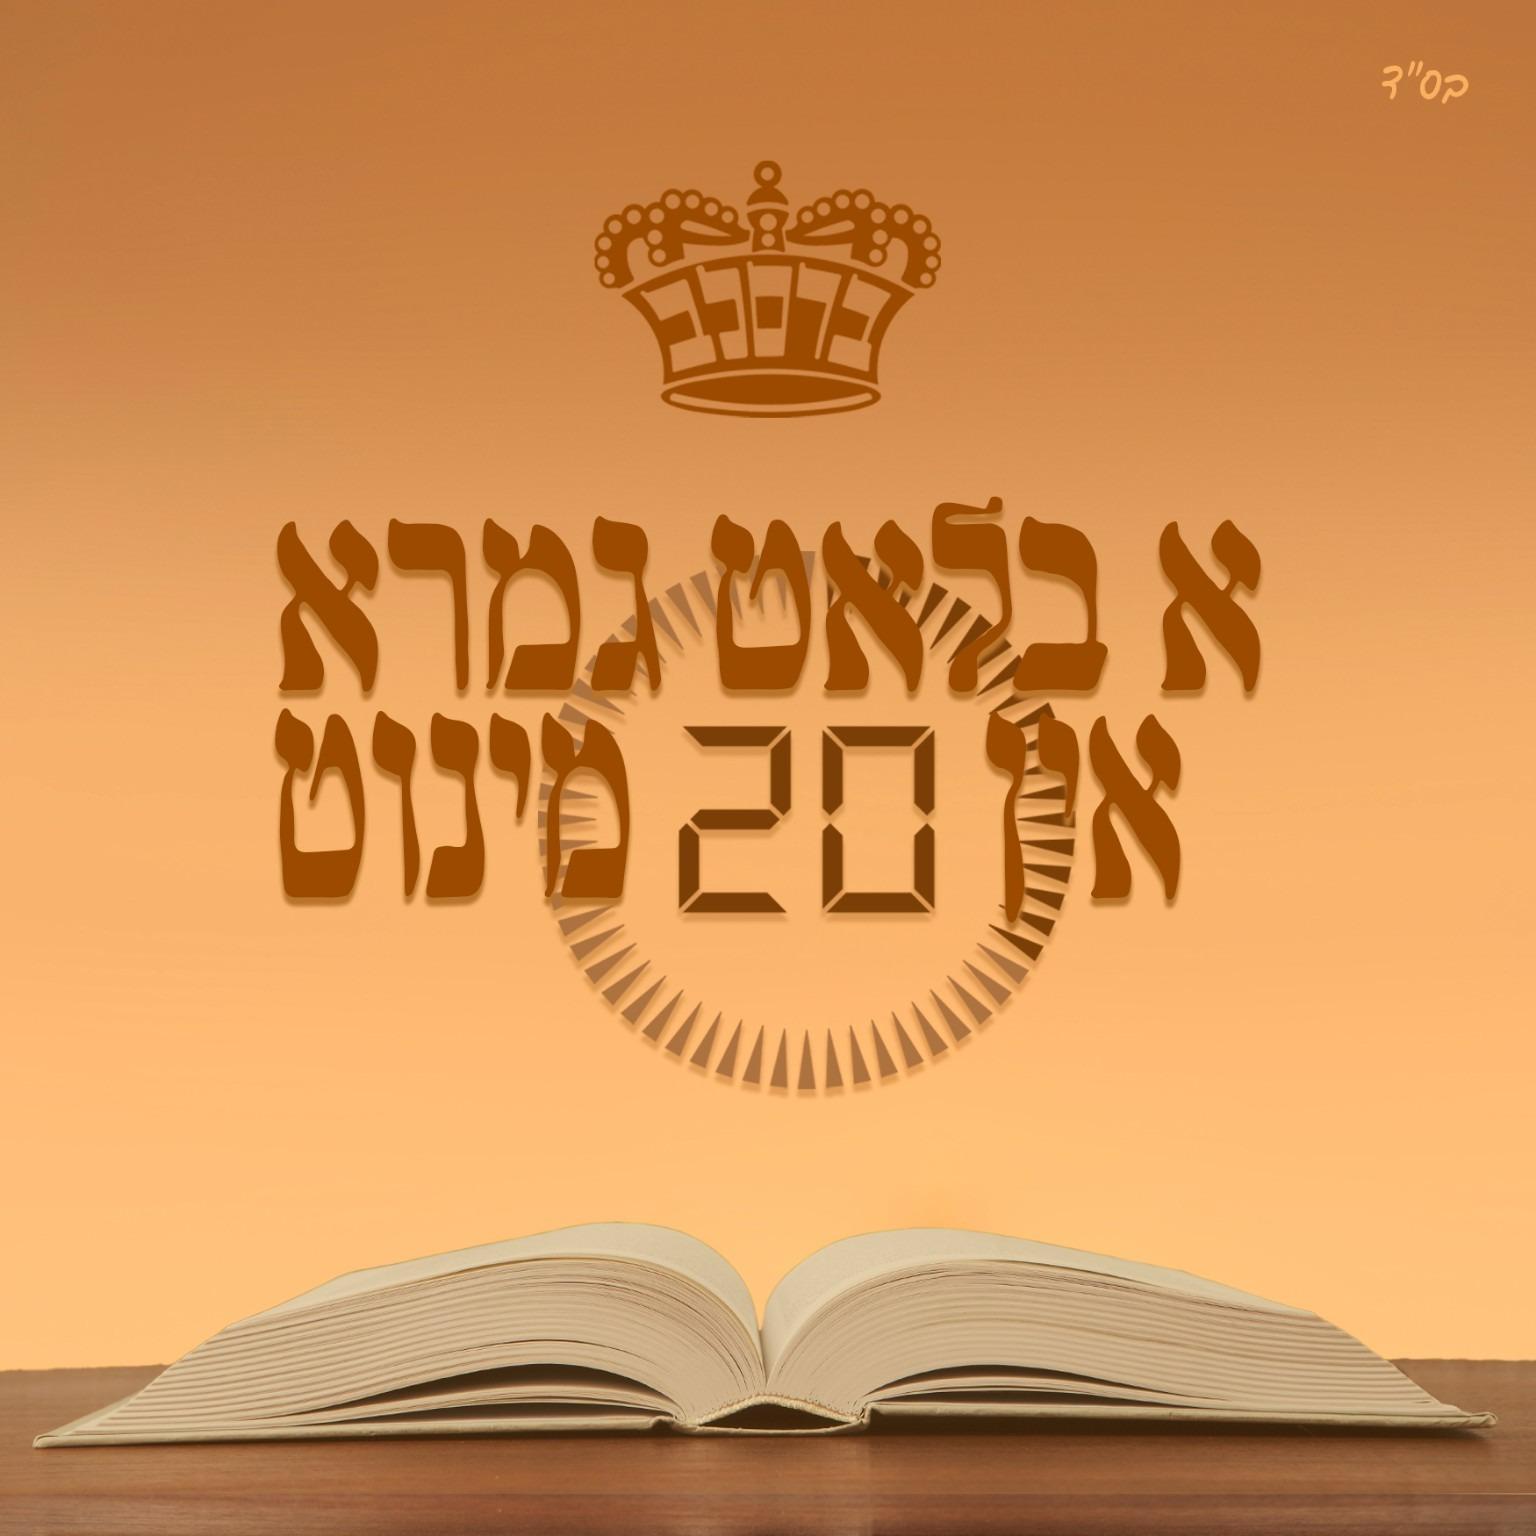 Daf Hayoimy by Rabbi Yoel Roth Shlita